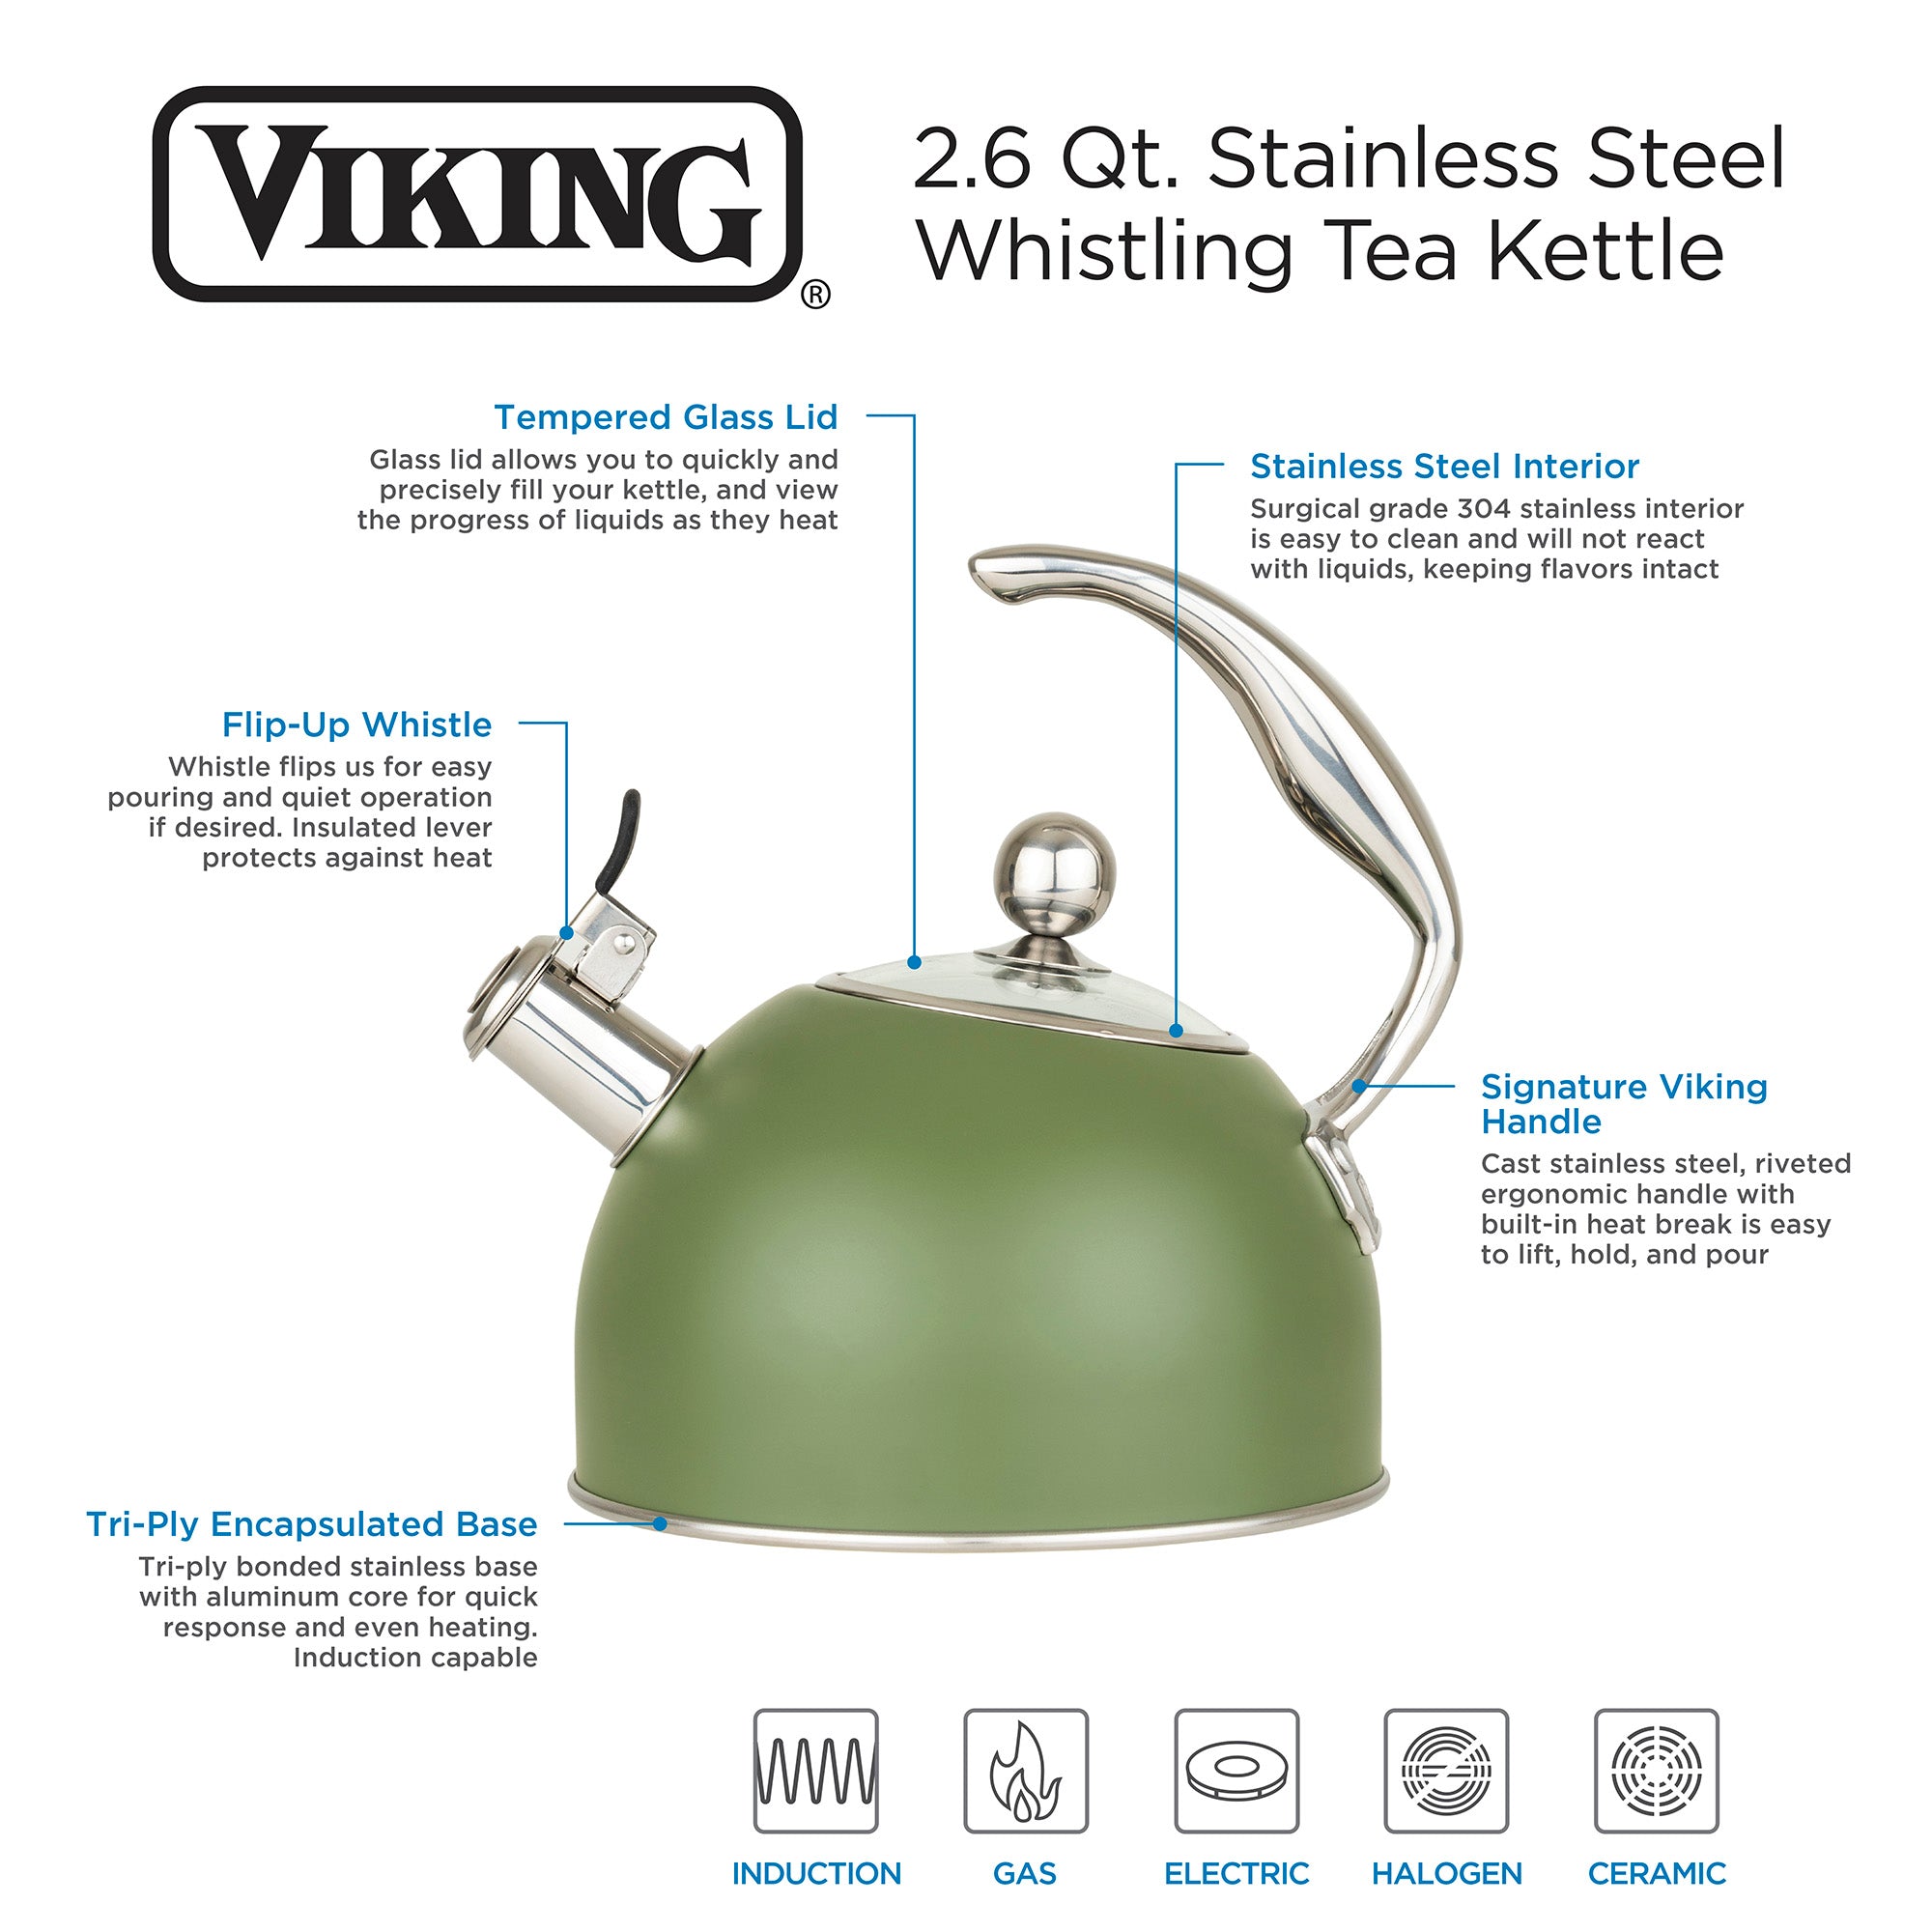 Viking Stainless Steel 2.6 Quart Whistling Tea Kettles